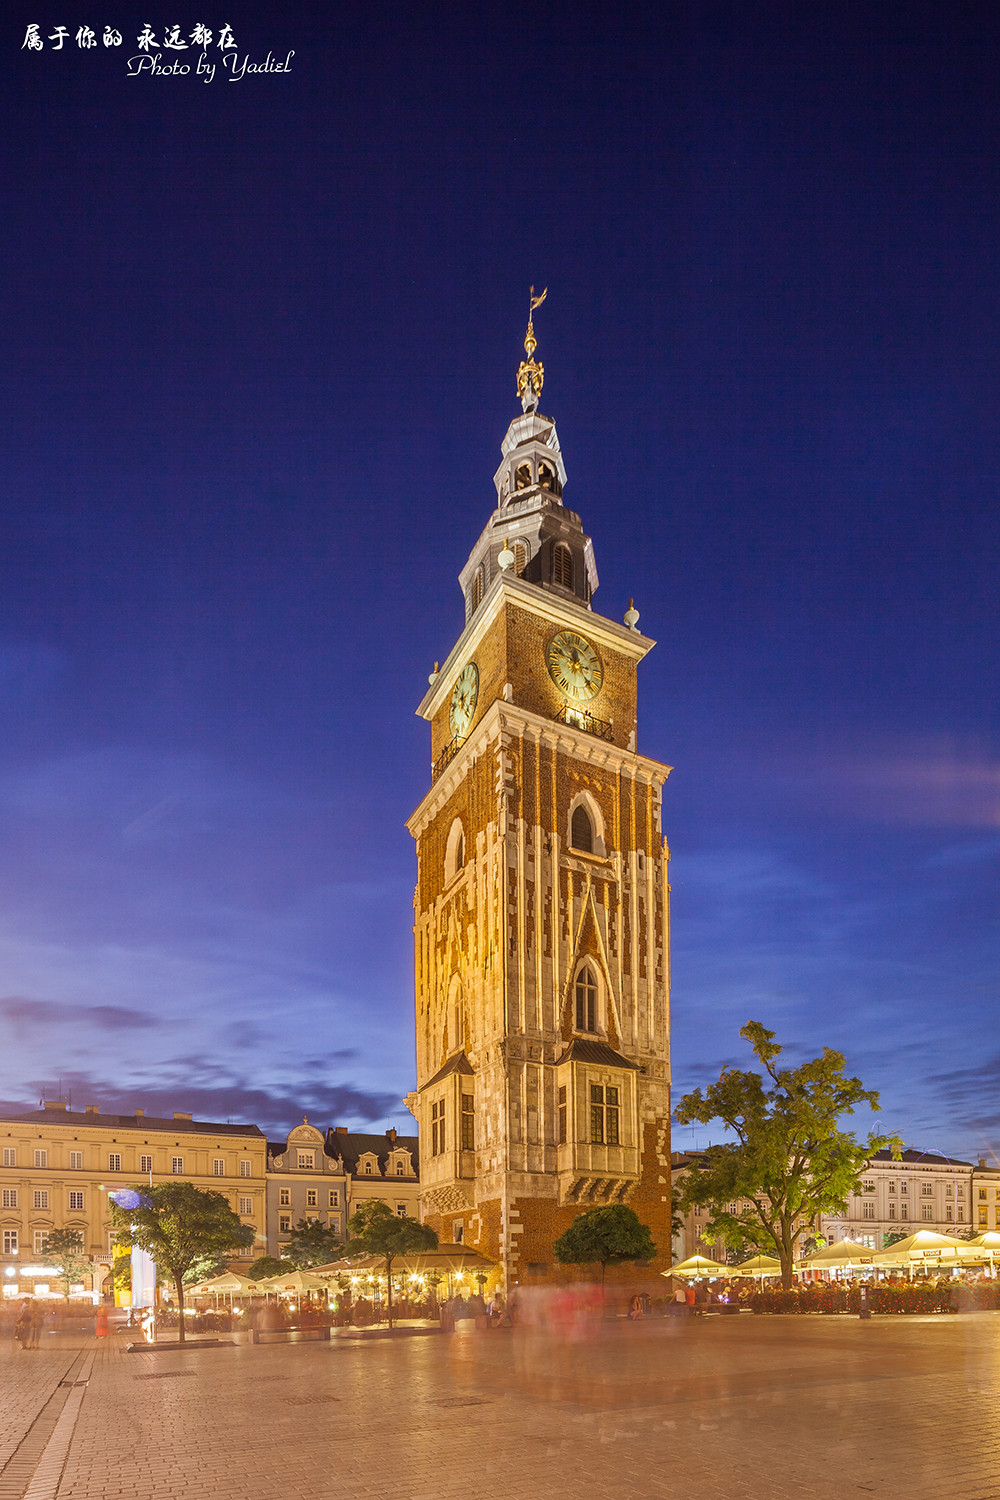 位于波兰第二大城市克拉科夫的老城,是老城市集广场的地标性建筑之一